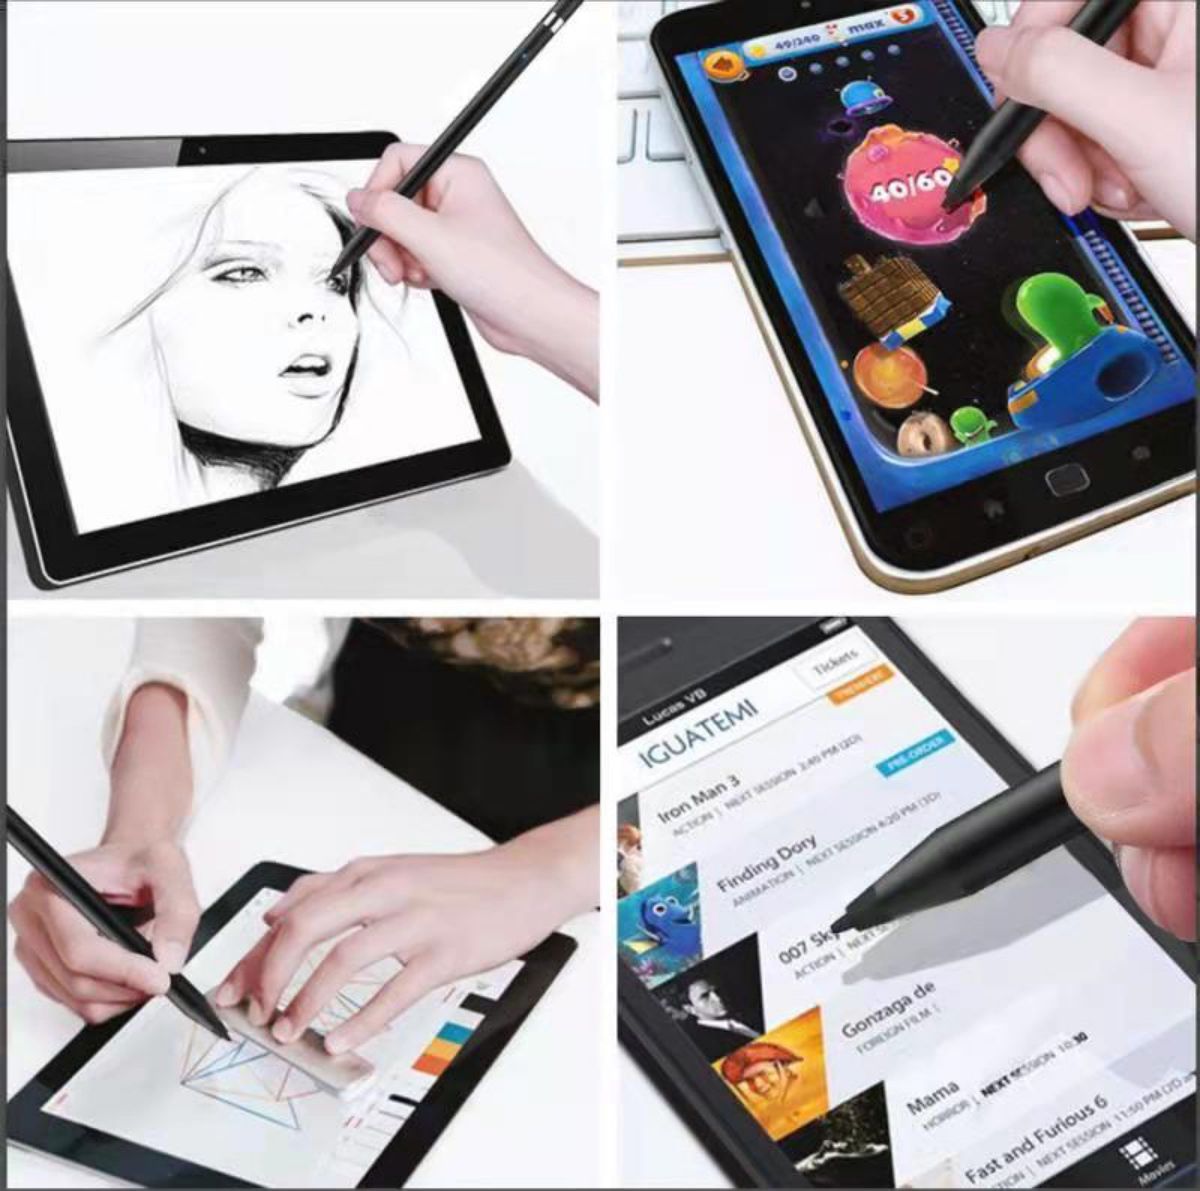 タッチペン スマートフォン タブレット スタイラスペン 極細 iPad iPhone Android対応 高感度 ツムツム